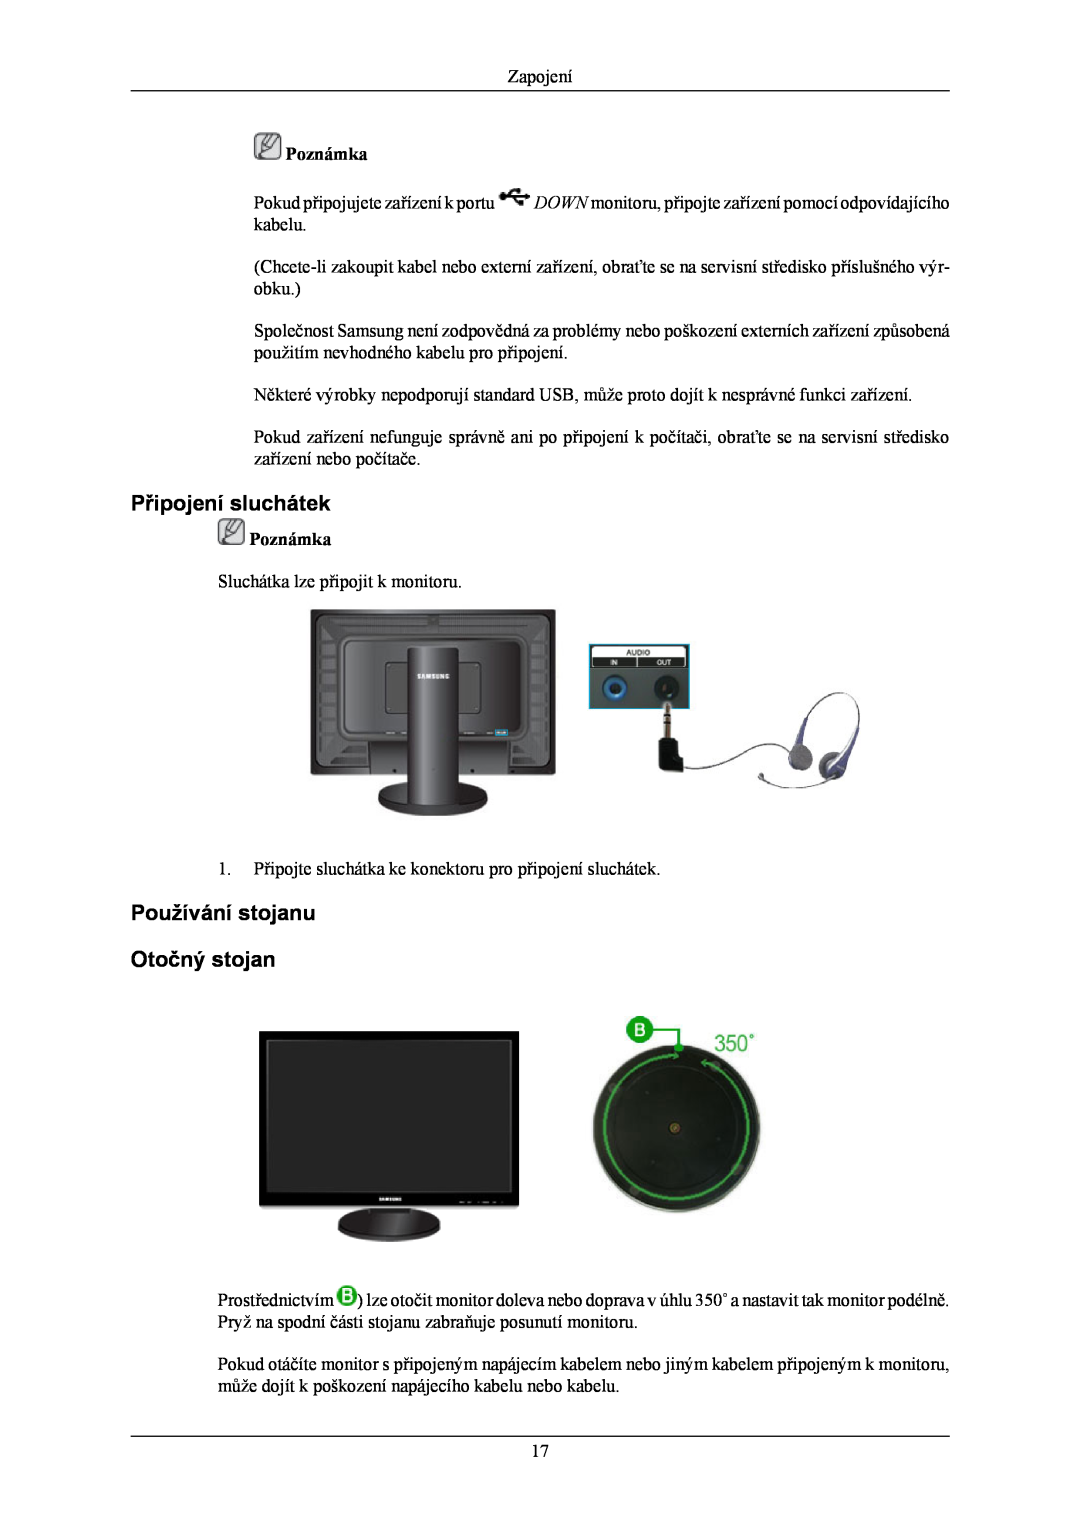 Samsung LS24KIERBQ/EDC, LS26KIERBV/EDC, LS24KIEEFV/EDC manual Připojení sluchátek, Používání stojanu Otočný stojan, Poznámka 